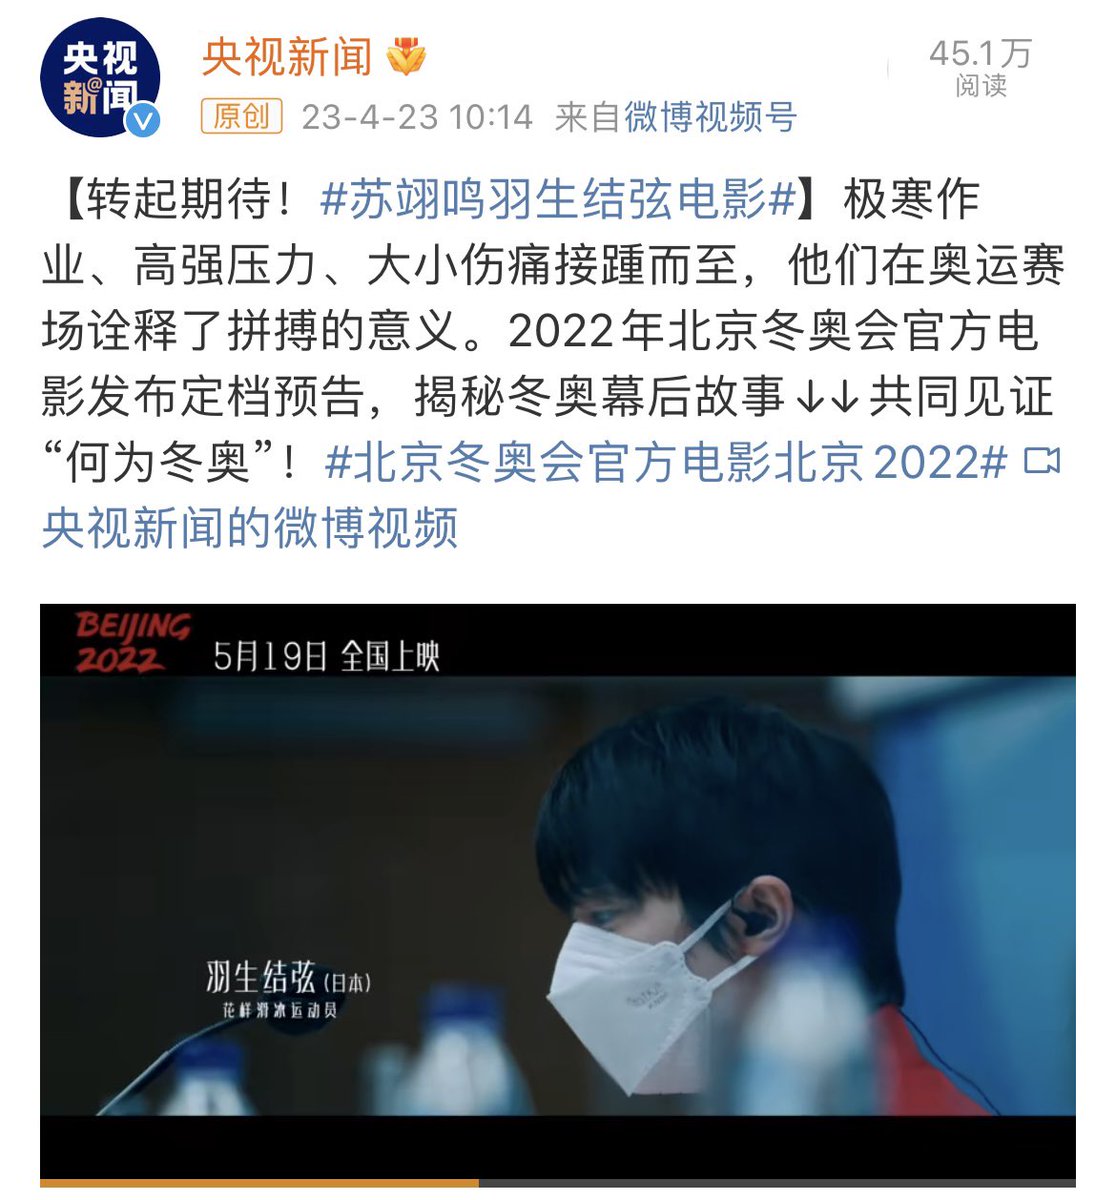 フォロワー数1.31億のCCTVニュース公式weiboアカウントも北京冬季オリンピックオフィシャルムービー「北京2022」の宣伝cmを投稿した。

#羽生結弦 
#HANYUYUZURU